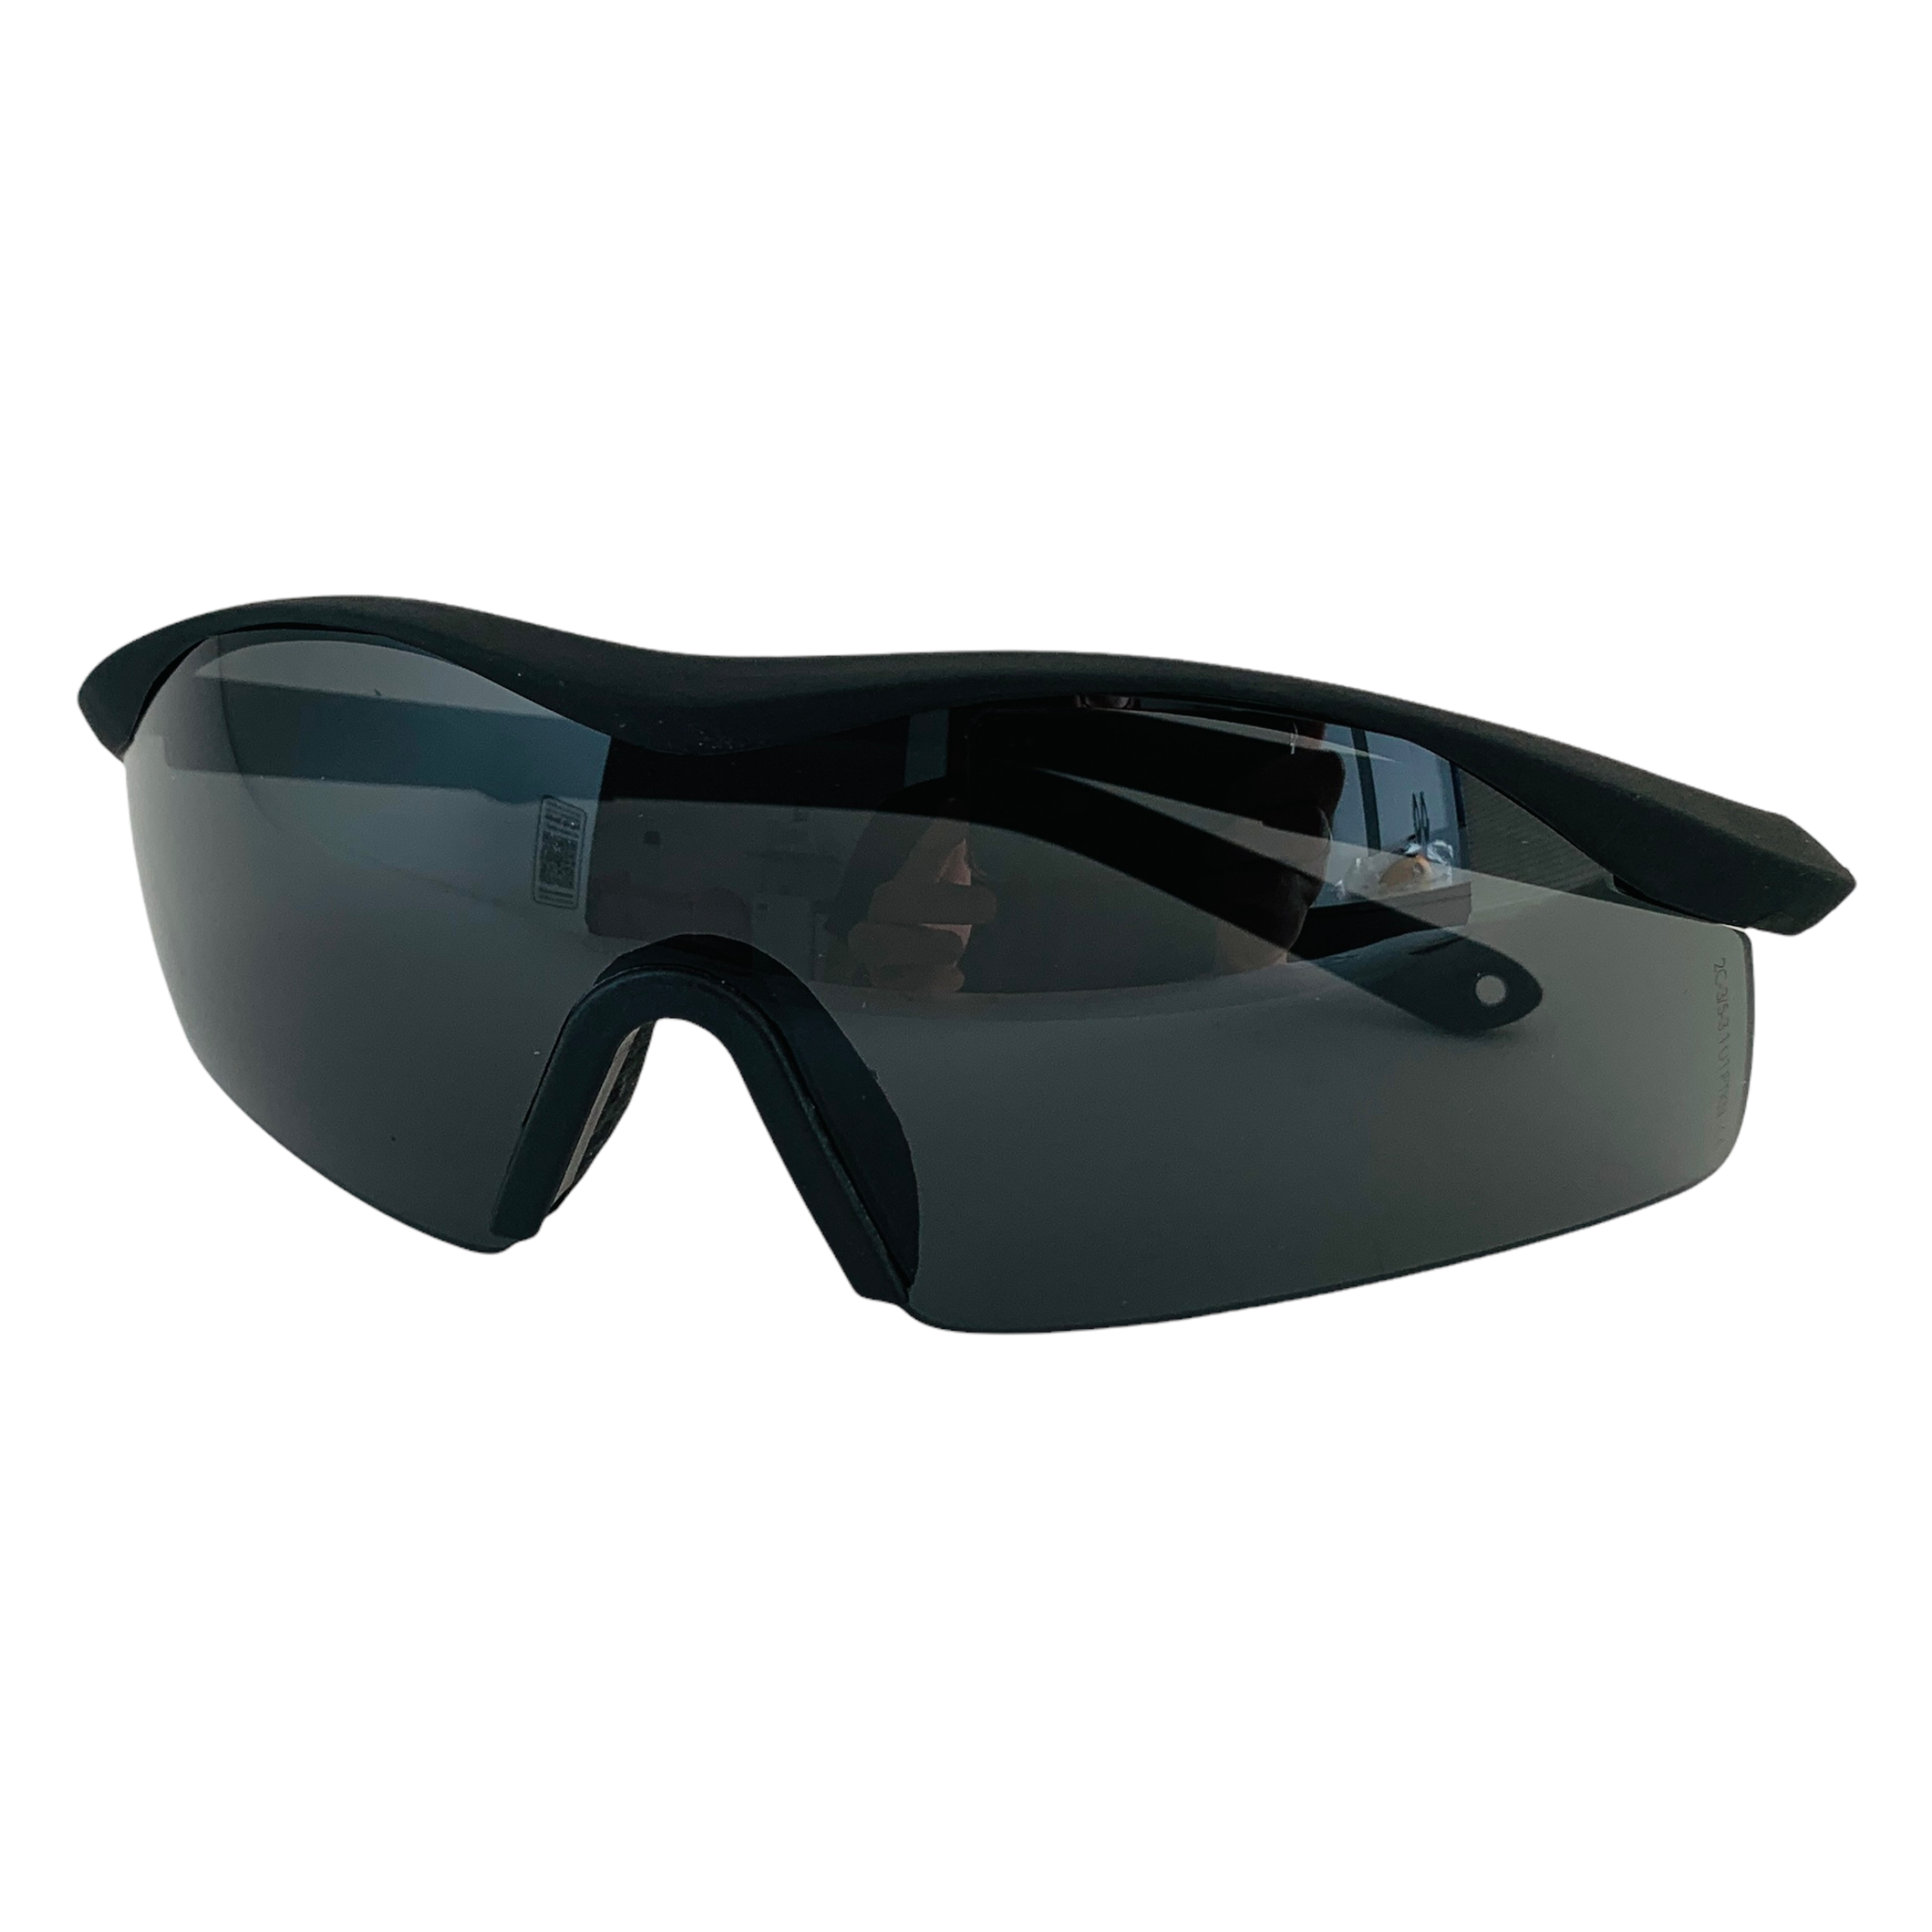 Óculos Segurança Ideal Airsoft Proteção Balistica 548 - 3